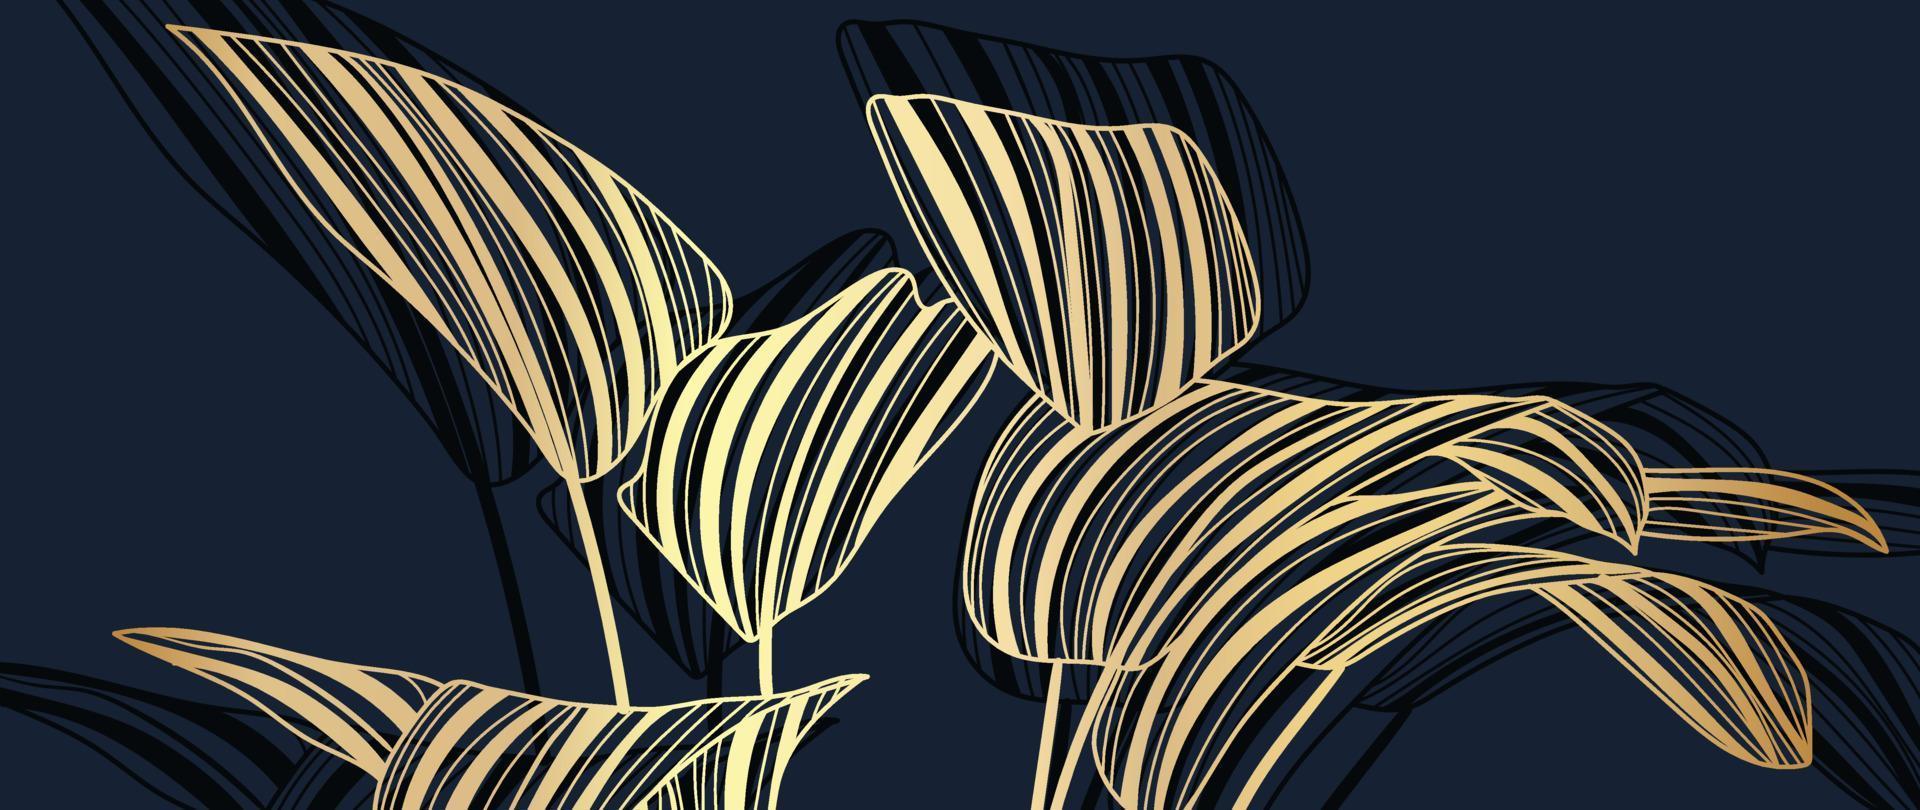 luxus goldene blätter linie kunst hintergrundvektor. natürliche tropische blattgoldstrichkunst auf dunklem hintergrund. designillustration für dekoration, wanddekoration, tapete, cover, banner, poster, karte. vektor